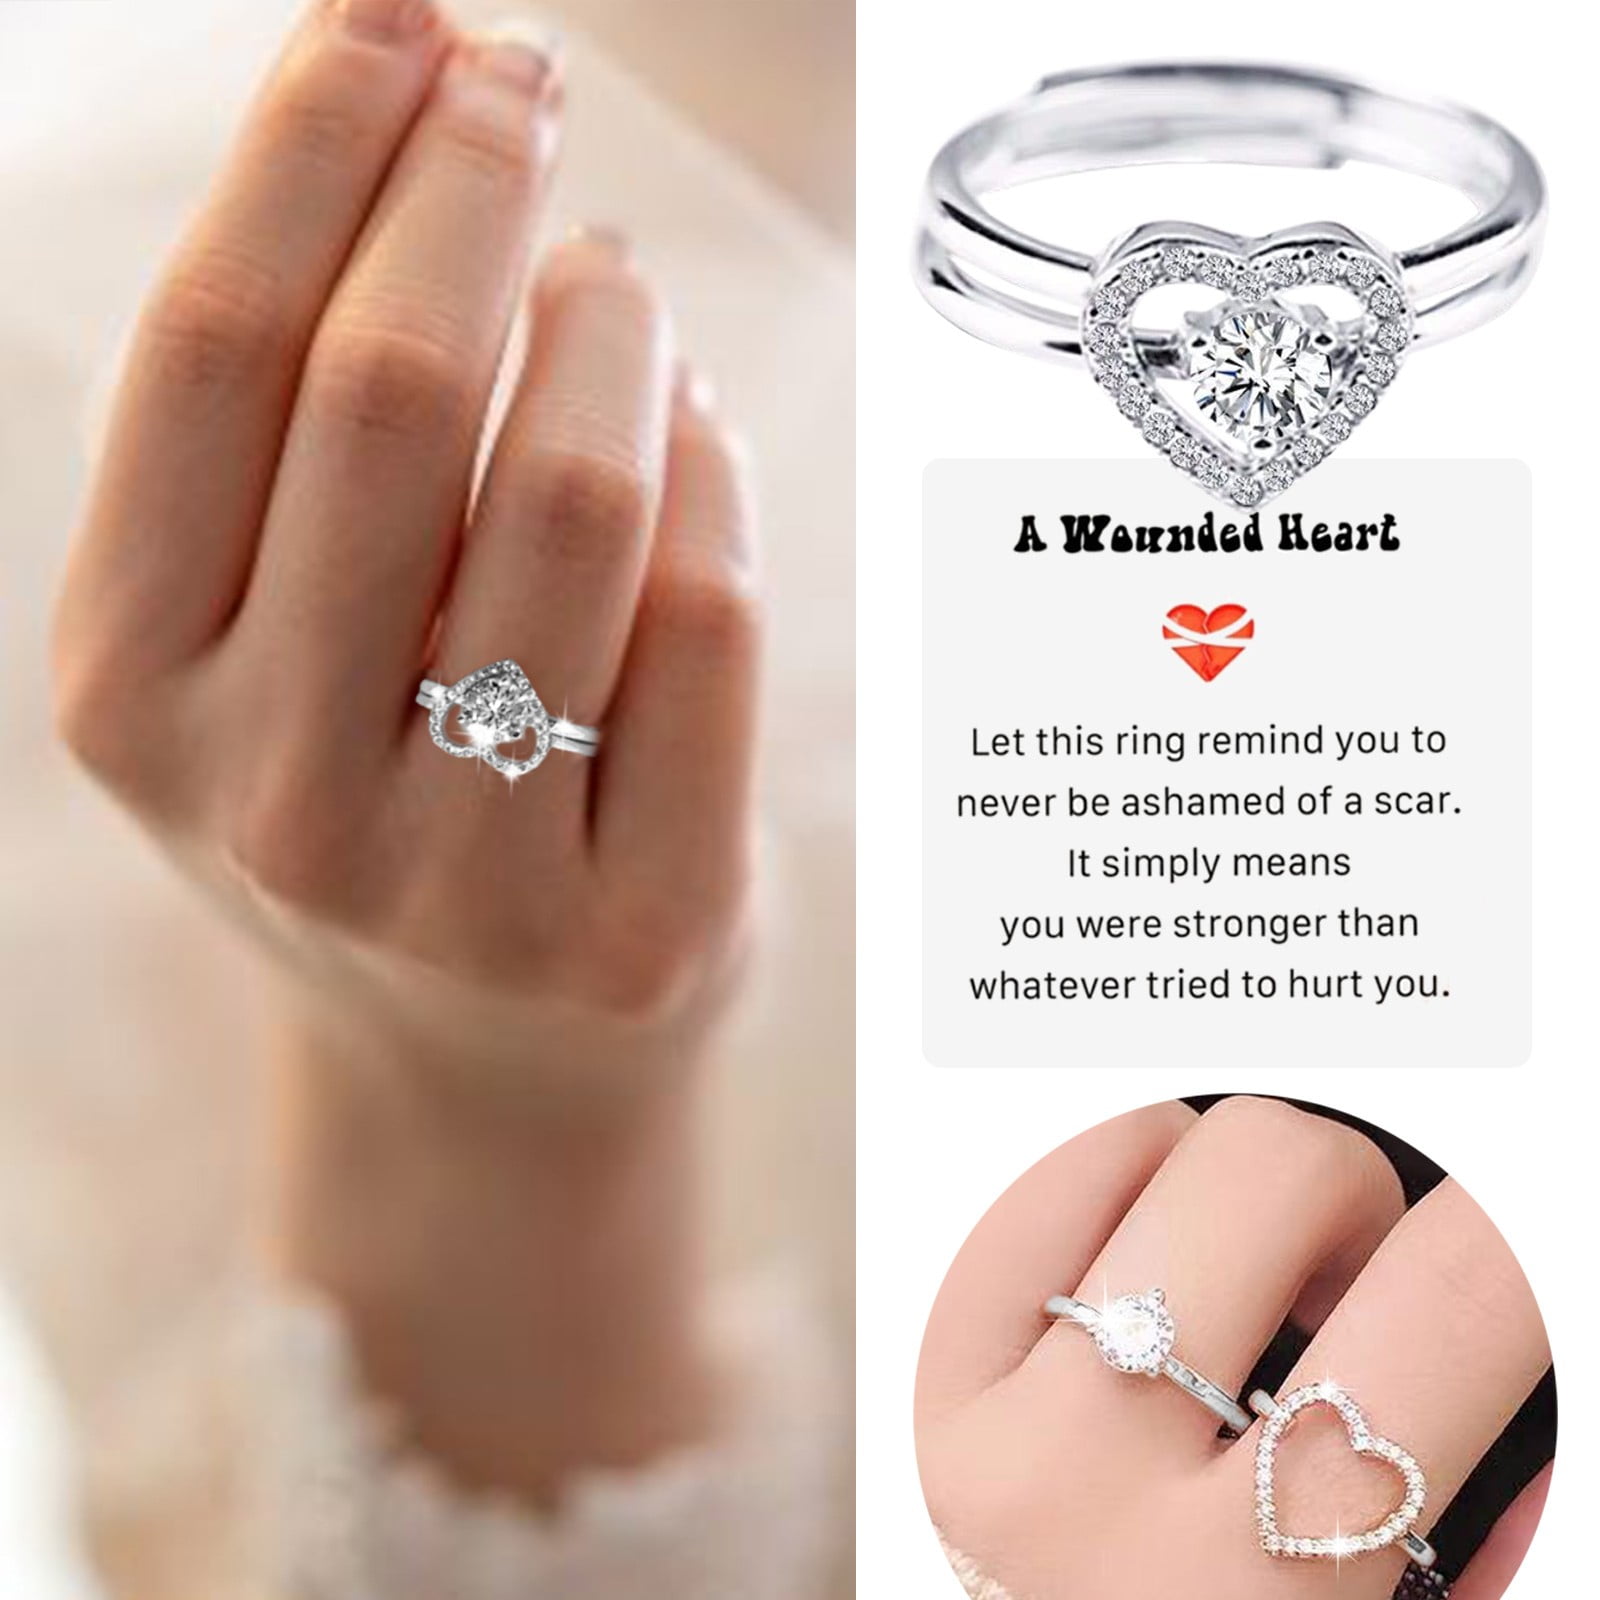 Two-Stone Diamond Ring Style#4317 - DiamondNet